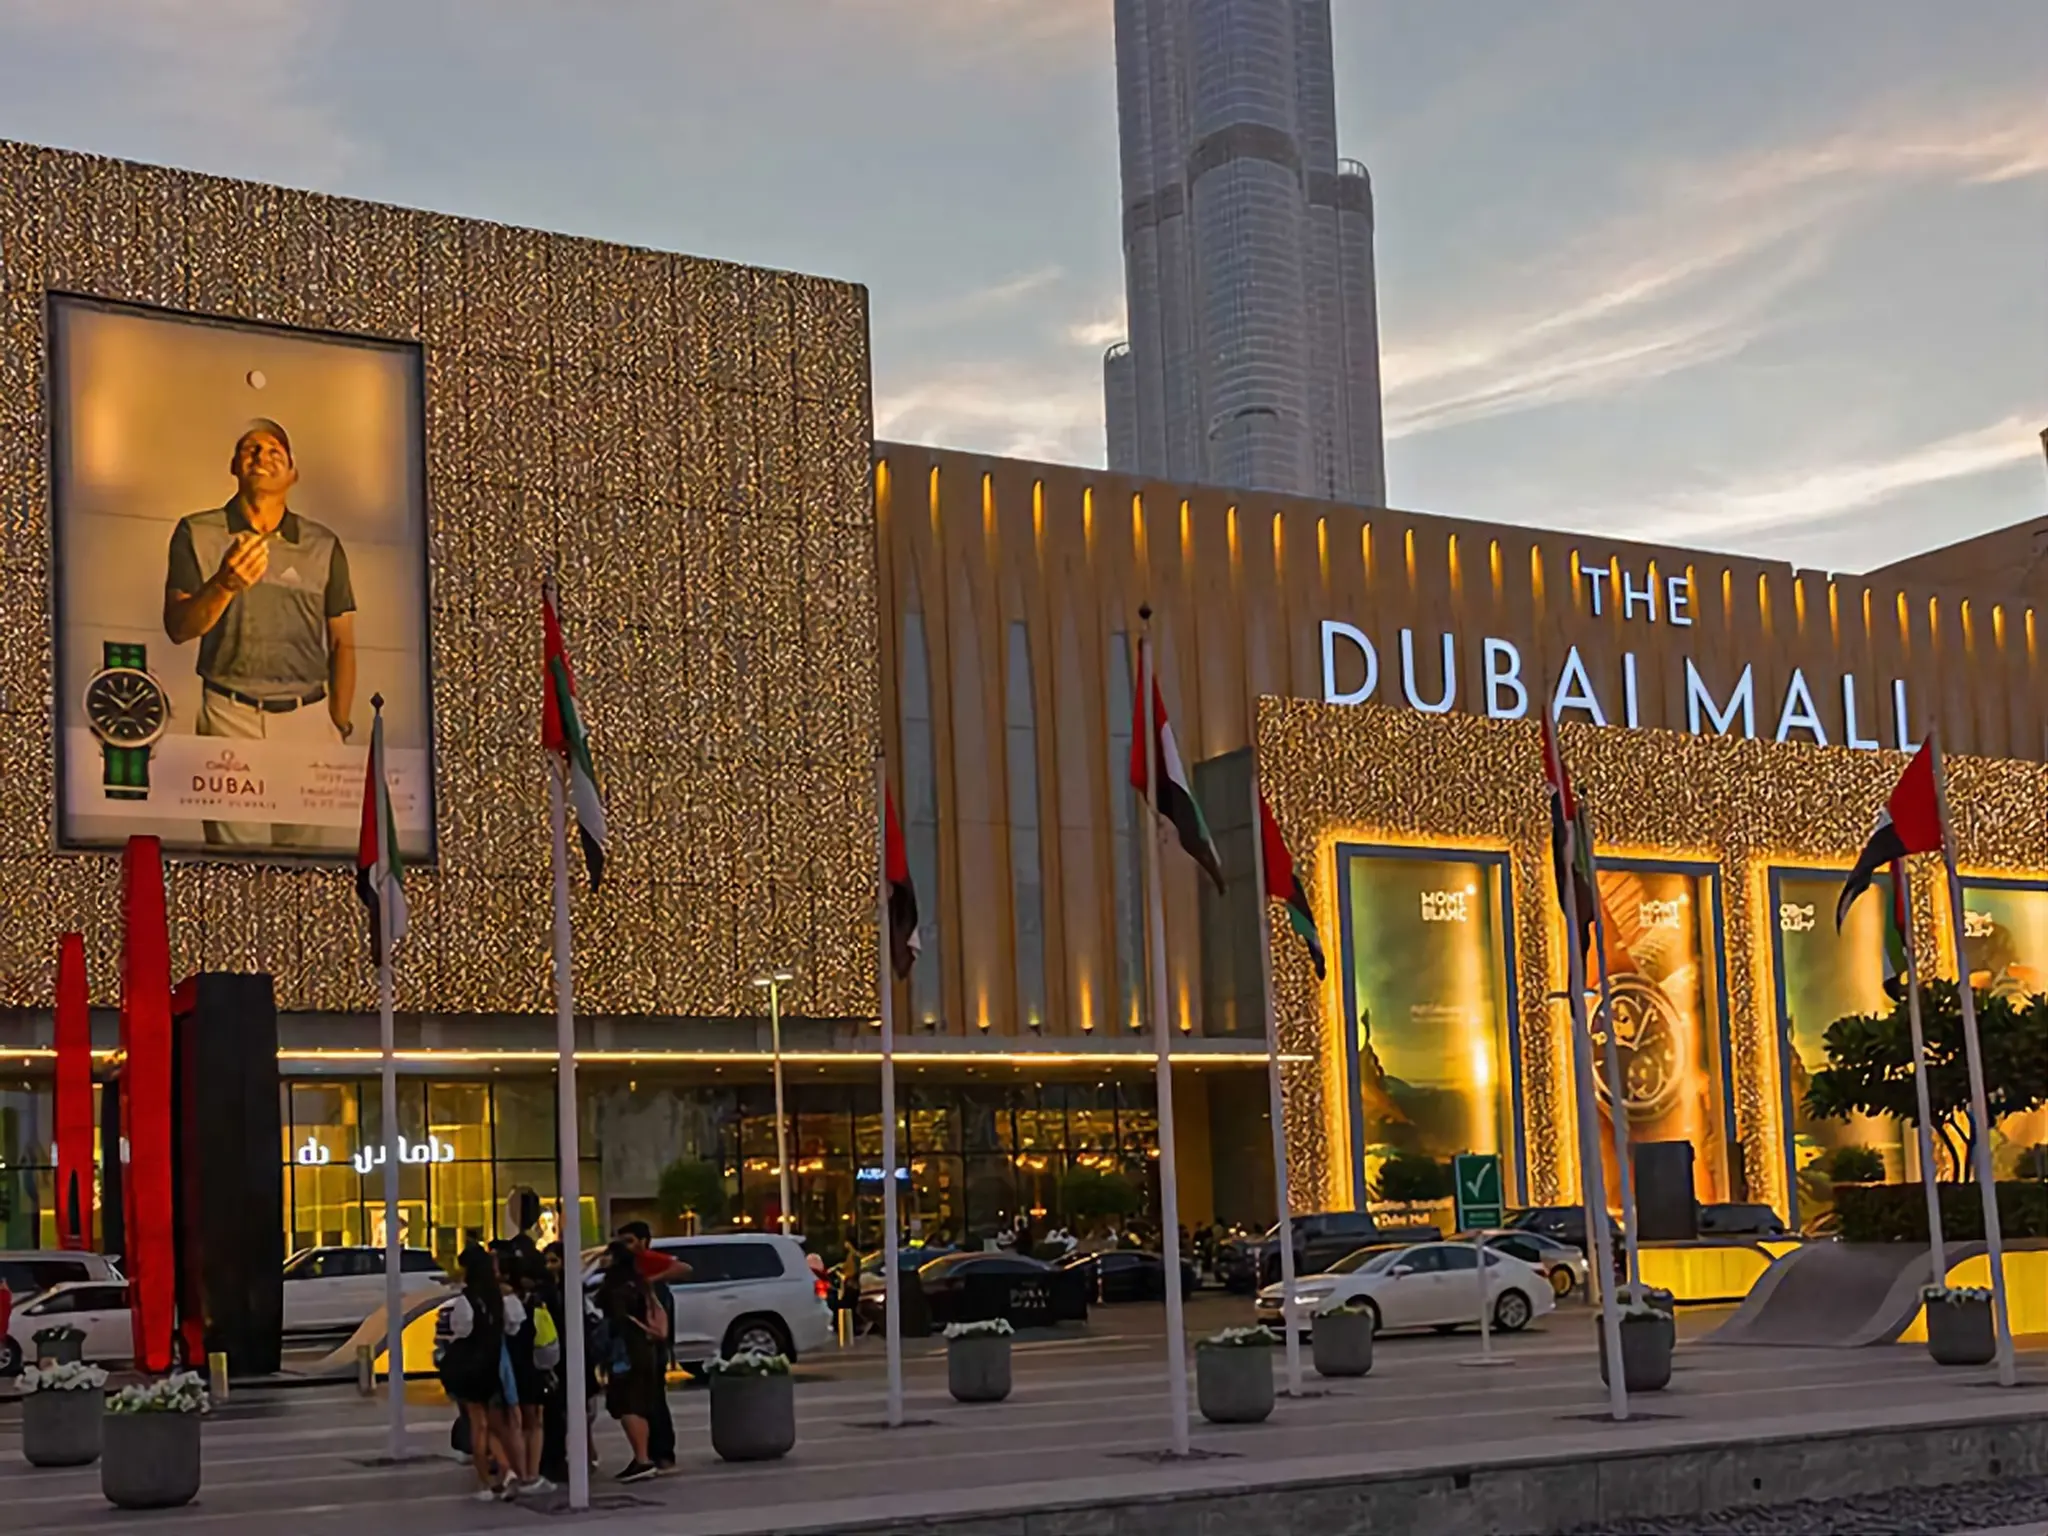 دبي مول يشهد نمواً غير مسبوقاً في عدد الزوار ليصل إلى 105 ملايين زائر